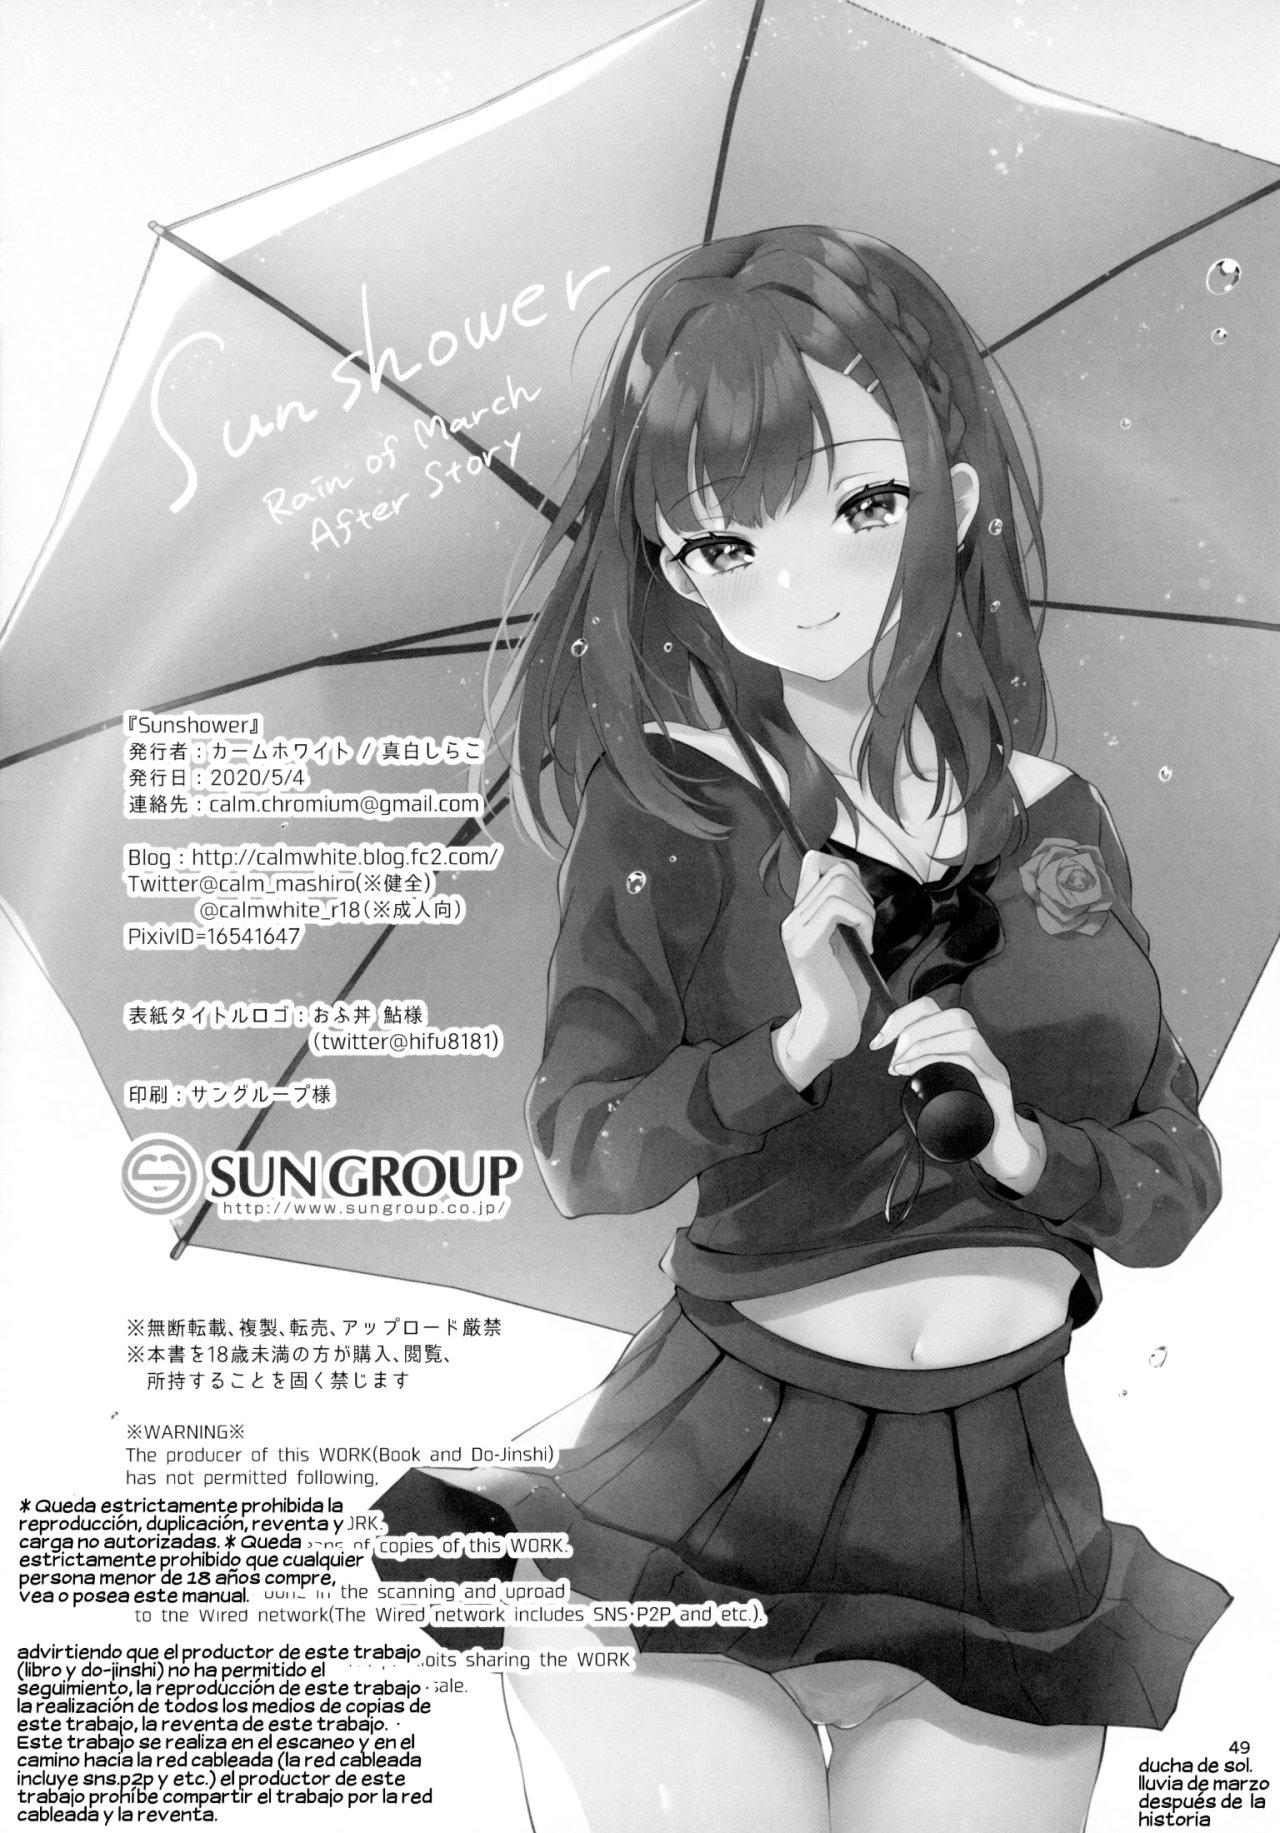 Sunshower-JK Miyako no Valentine Manga 3 - 47